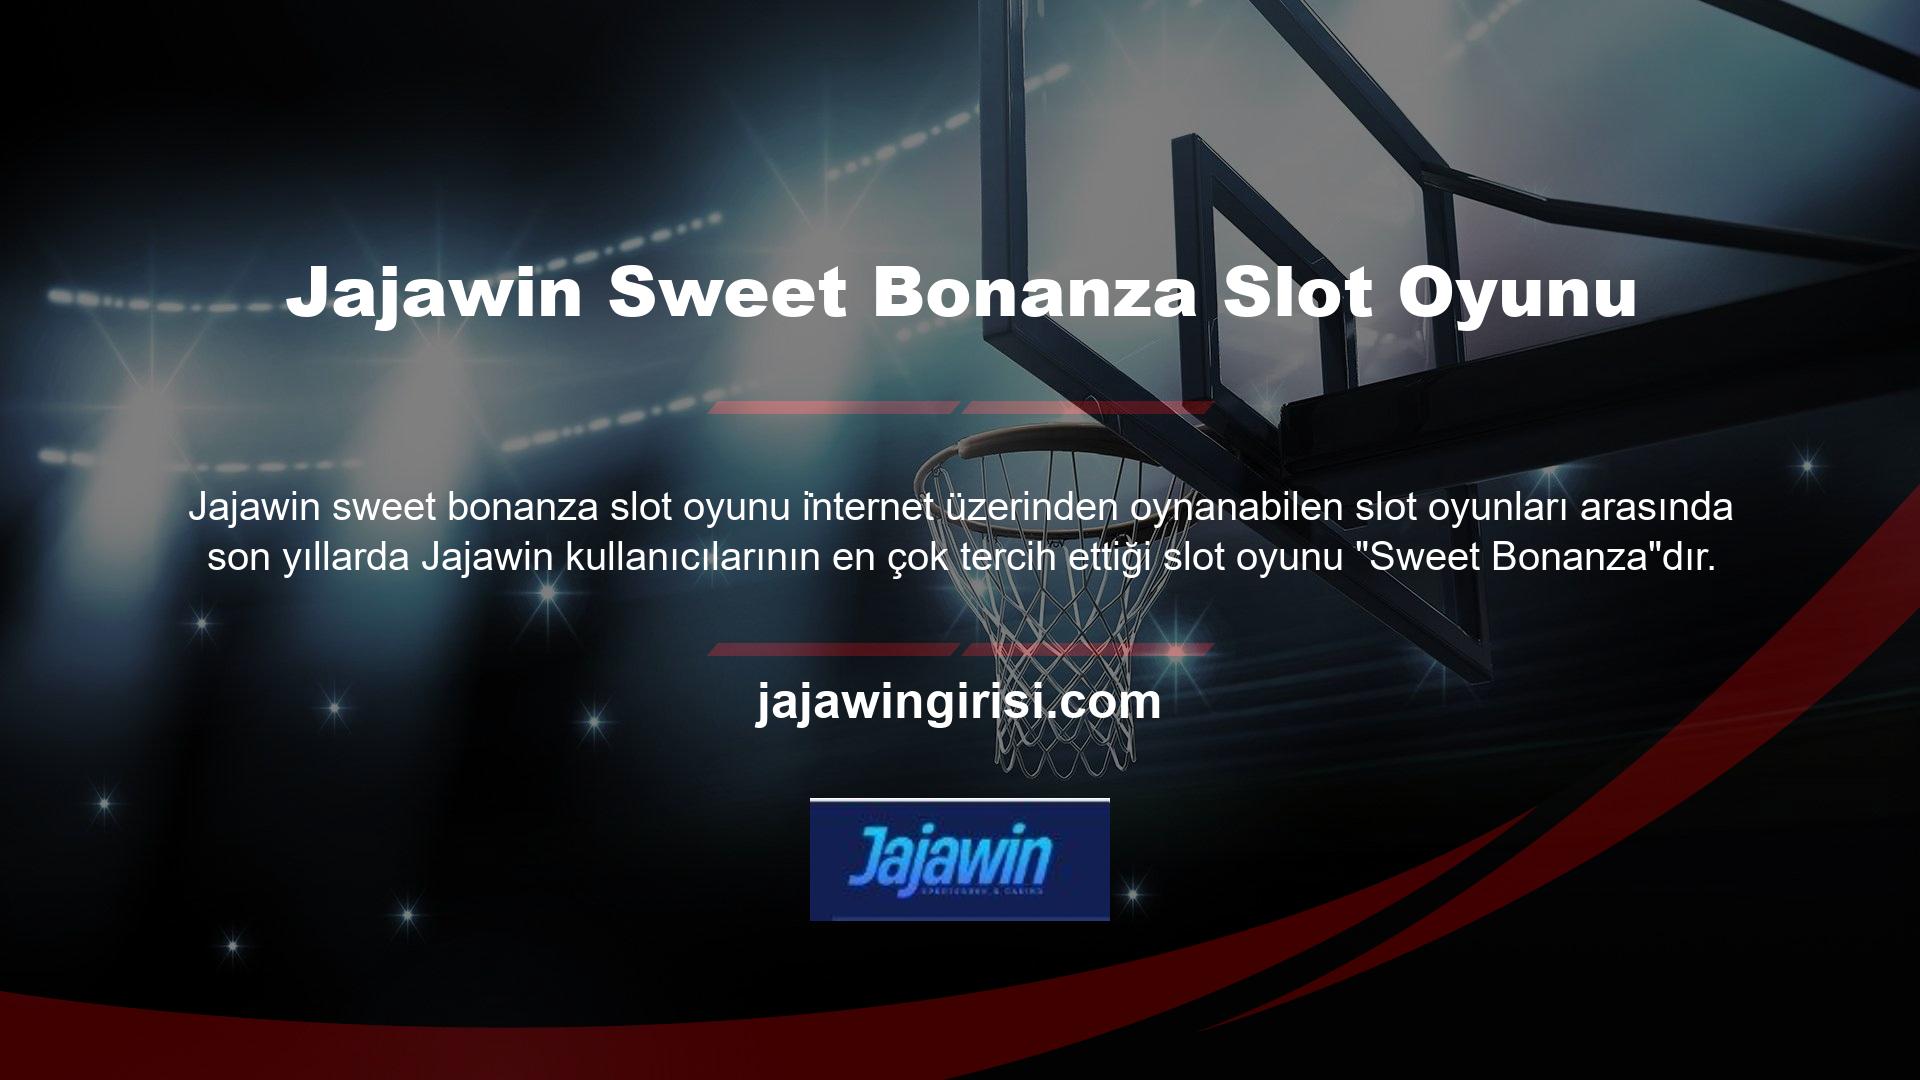 Jajawin Sweet Bonanza Bonanza slot oyunu, Candy Crush slot oyununu taklit eder ve 7'den 77'ye her yaş için uygundur